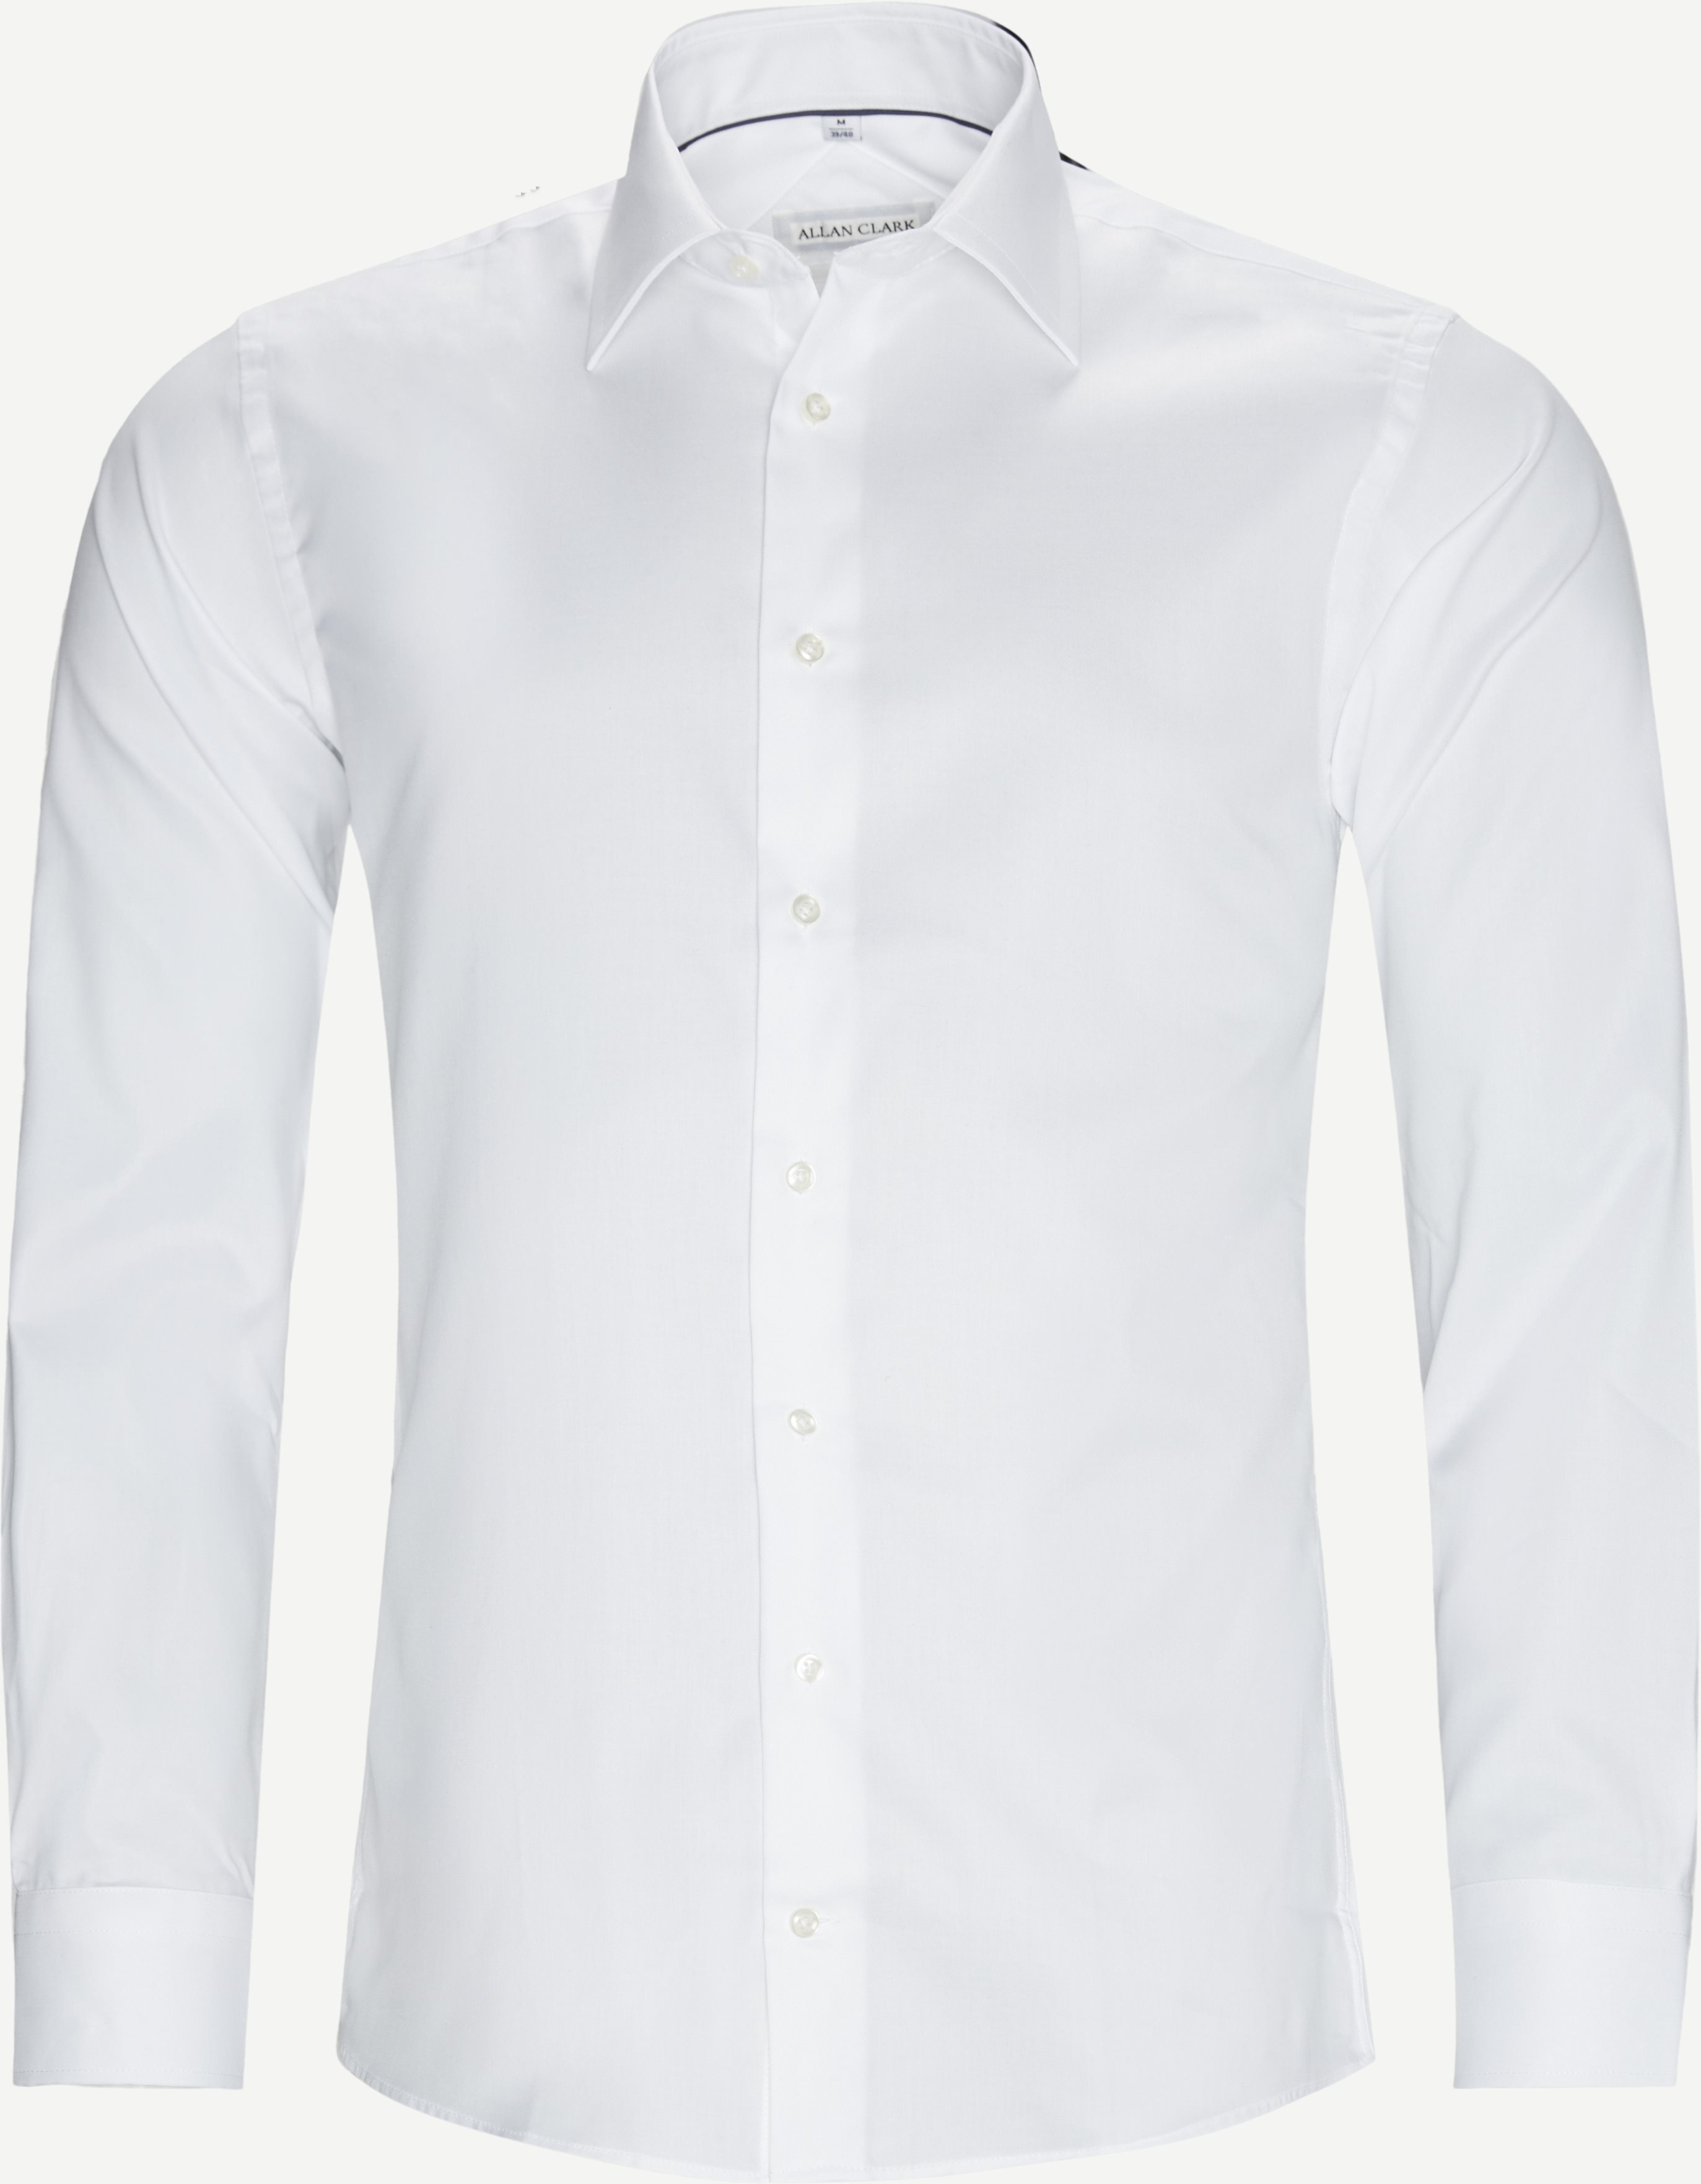 Nania Shirt - Shirts - White